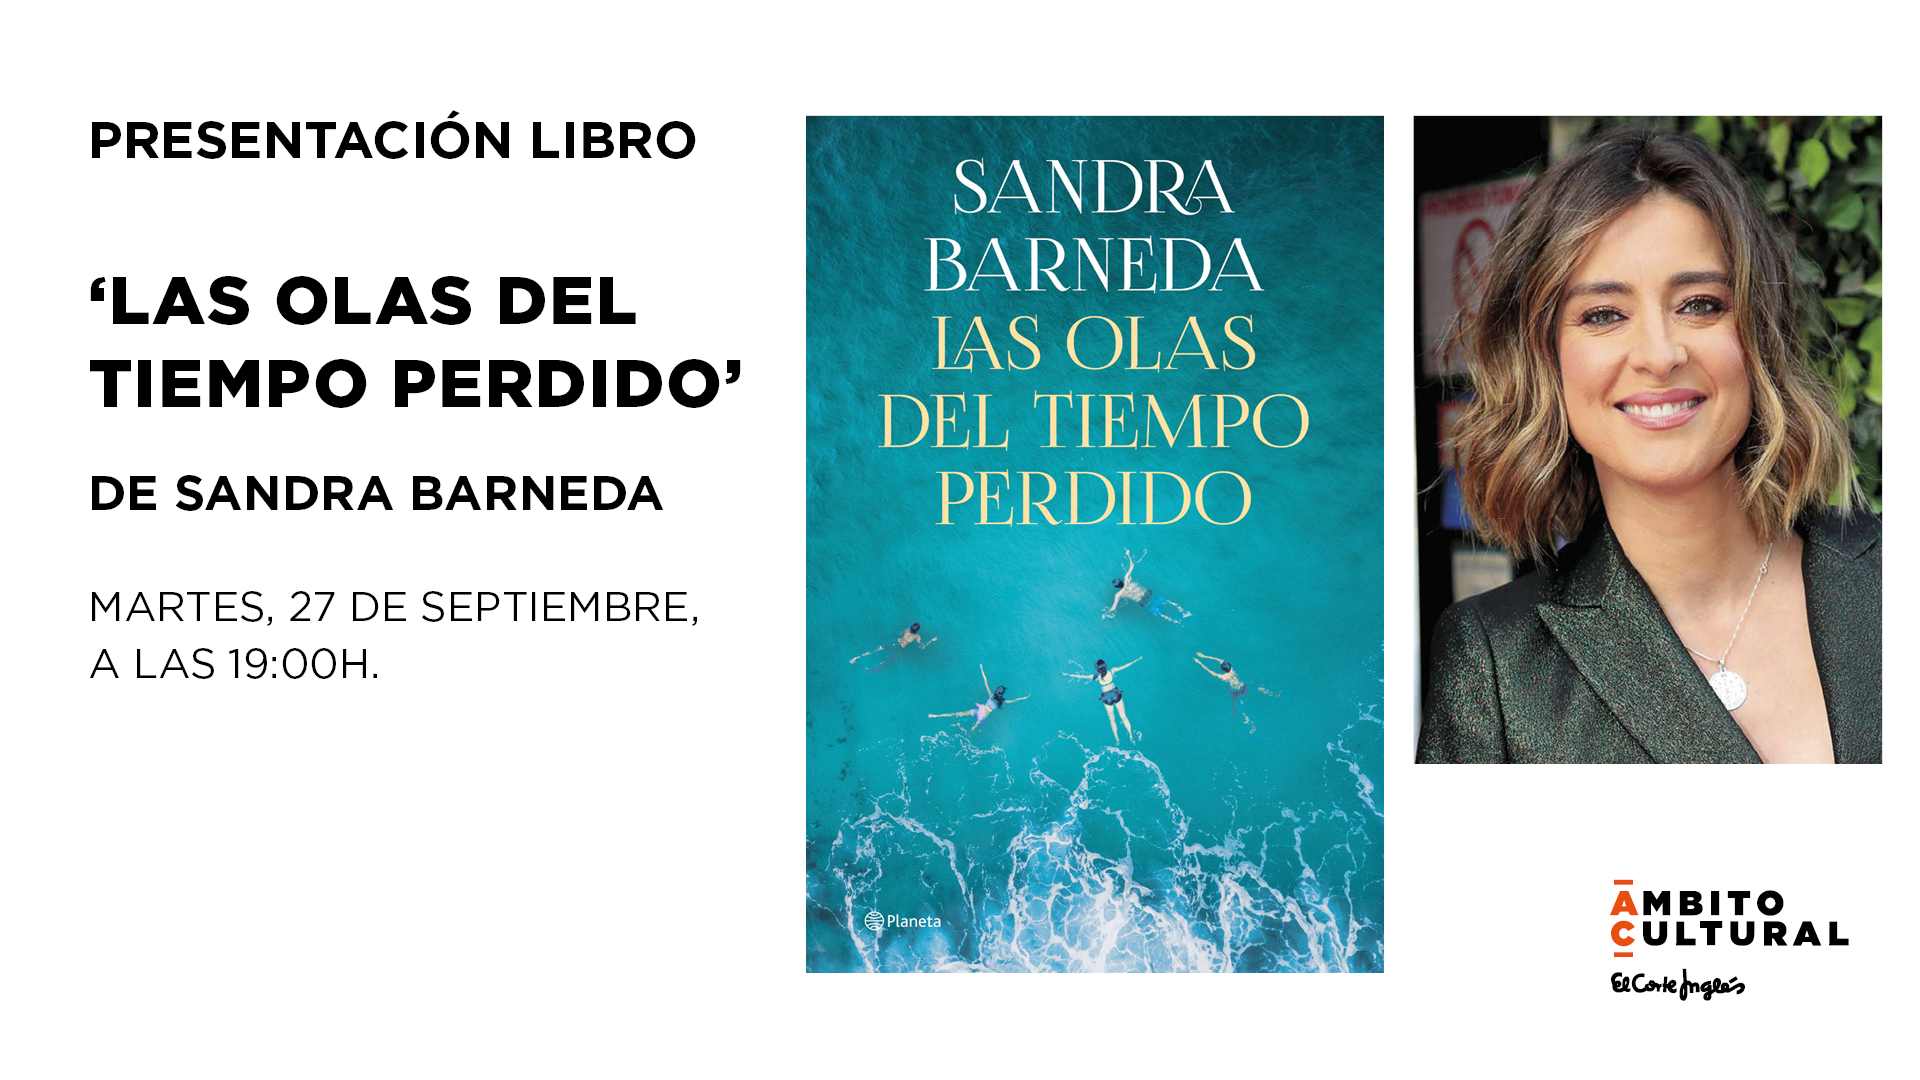 Imagen del evento PRESENTACIÓN LIBRO: 'LAS OLAS DEL TIEMPO PERDIDO' DE SANDRA BARNEDA